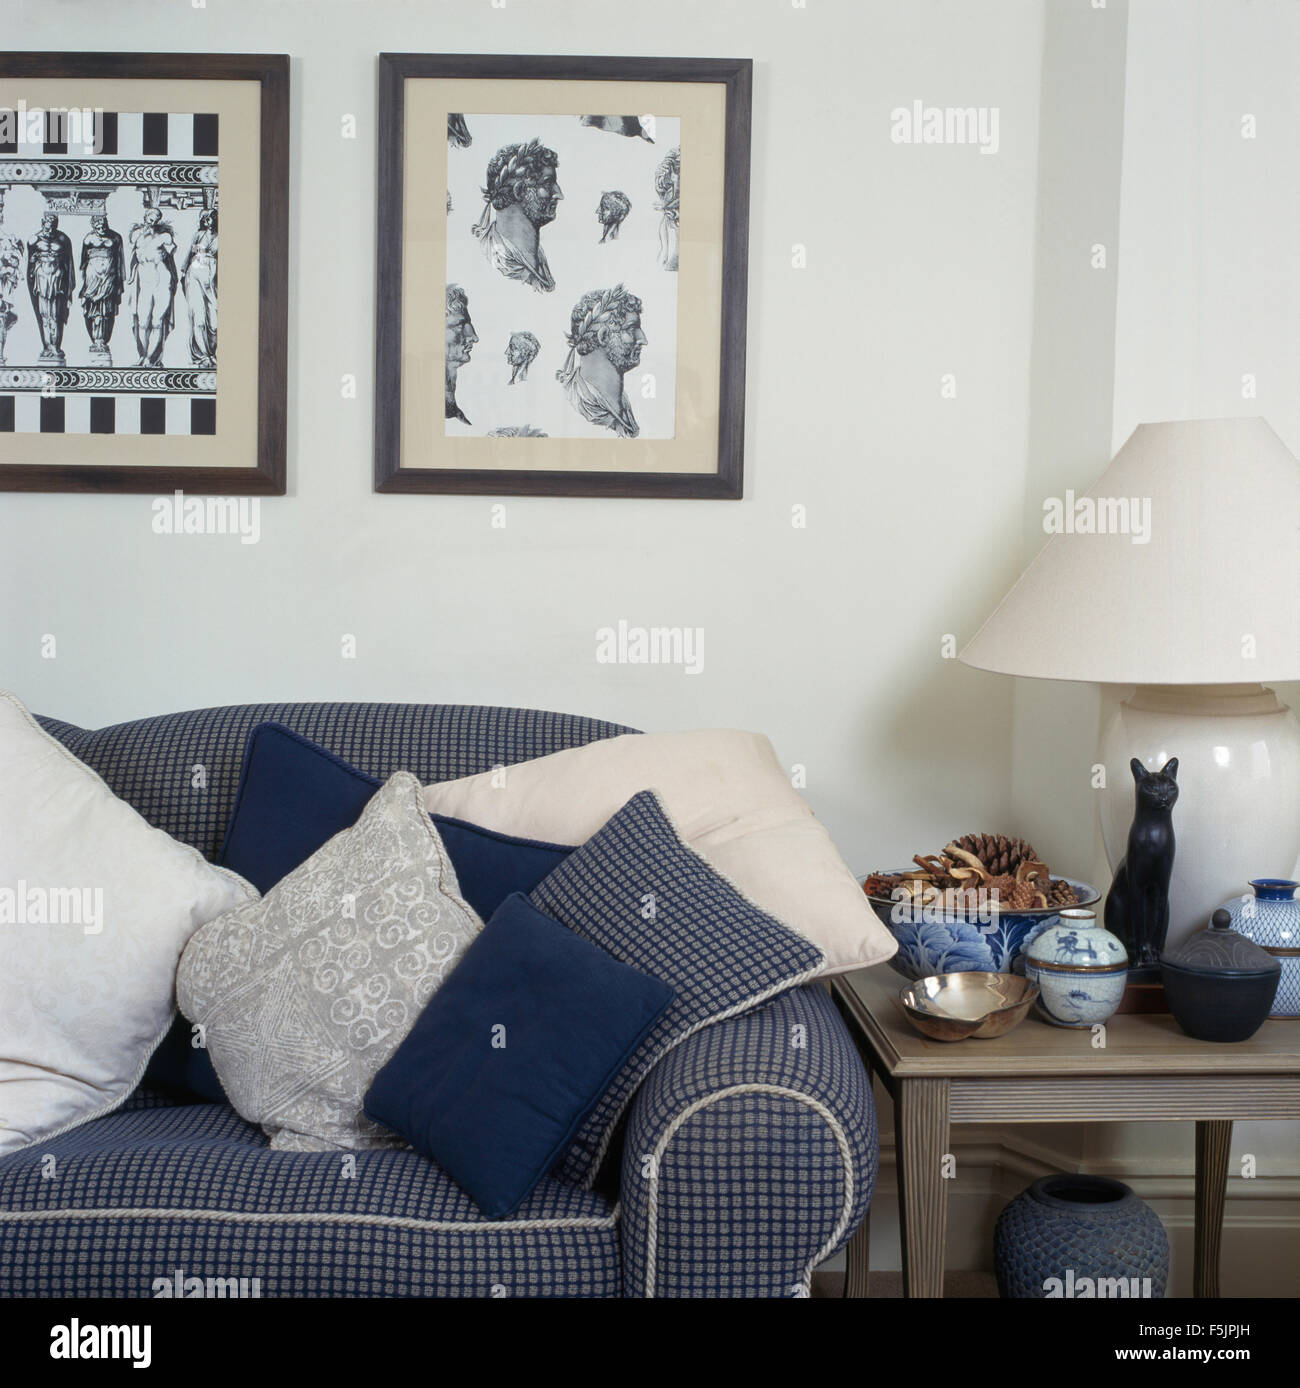 Nero+white neo-classico stampe incorniciate al di sopra di un blu selezionata divani accatastati con cuscini in una degli anni novanta soggiorno Foto Stock